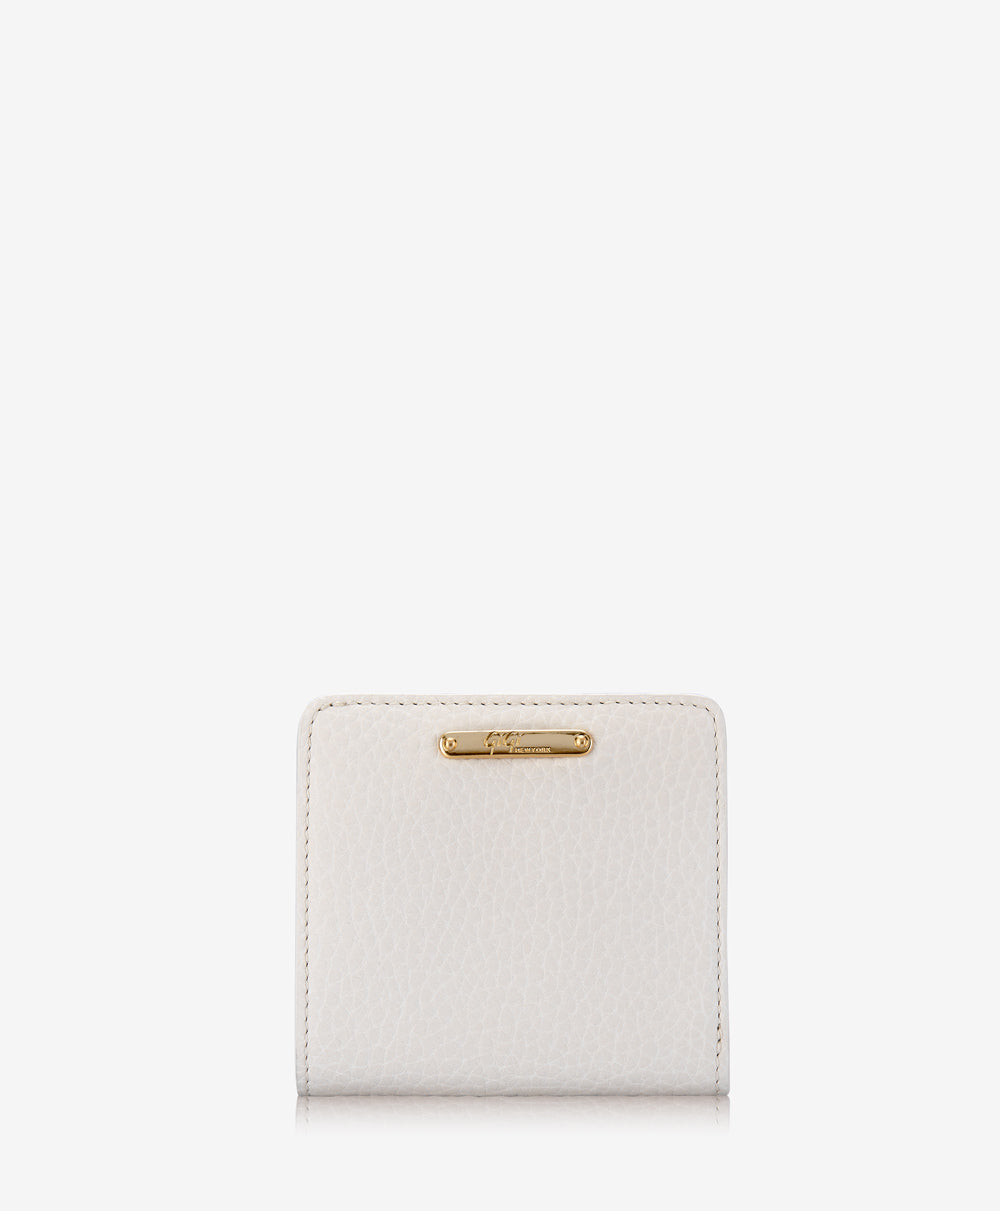 GiGi New York Mini Foldover Wallet White Pebble Grain Leather